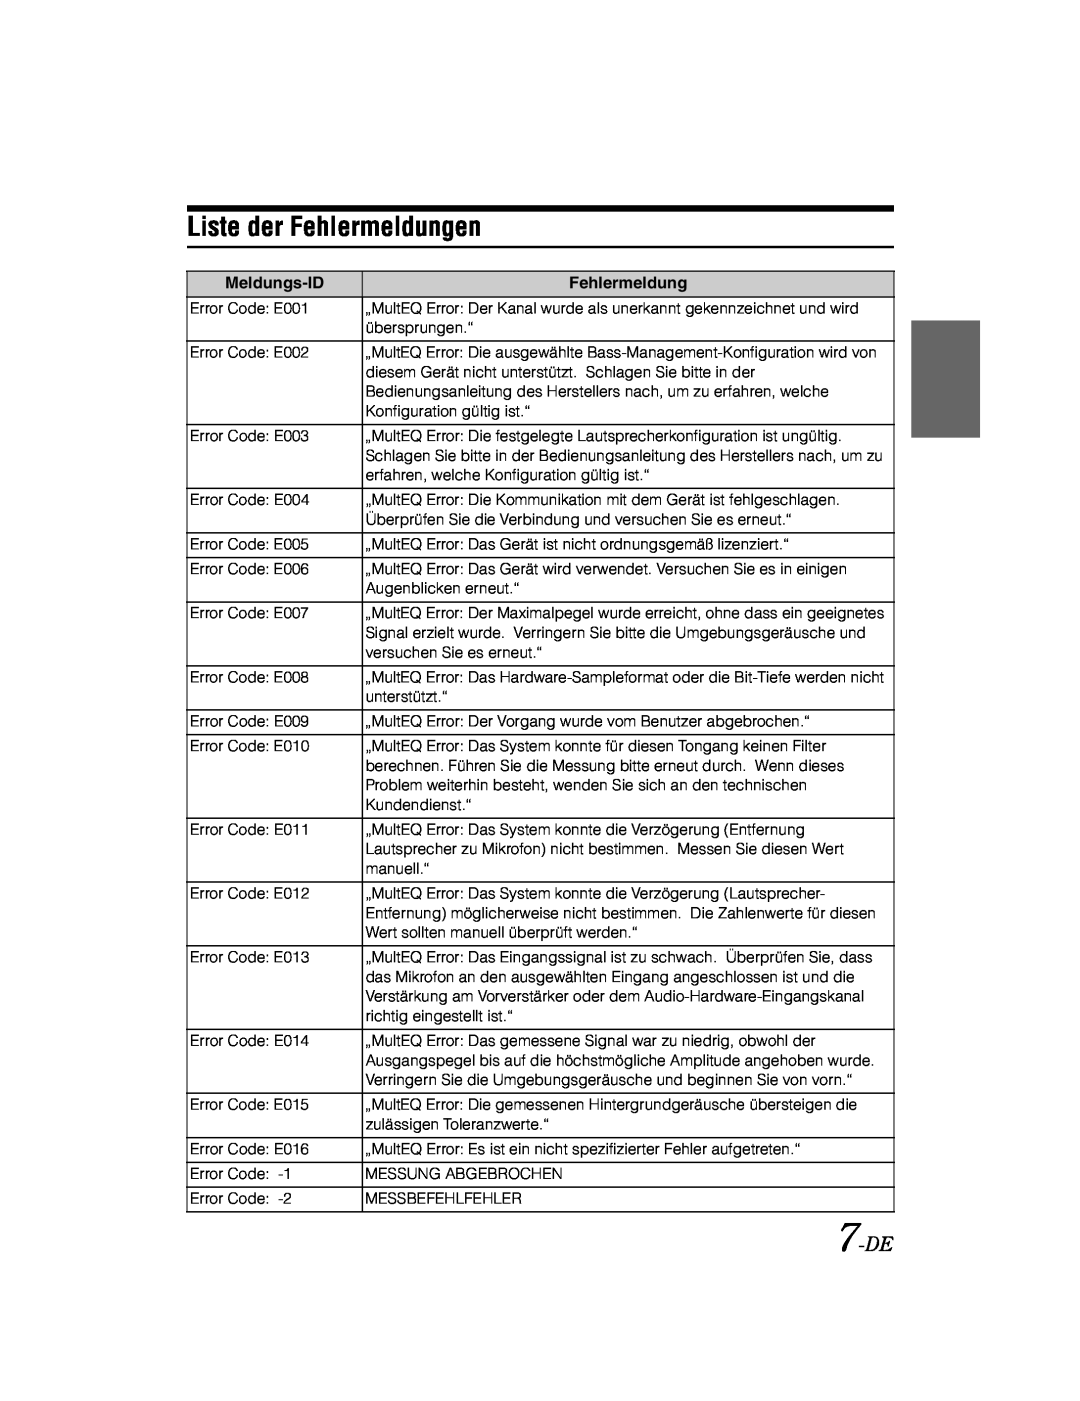 Alpine KTX-100EQ owner manual Liste der Fehlermeldungen, 7-DE 